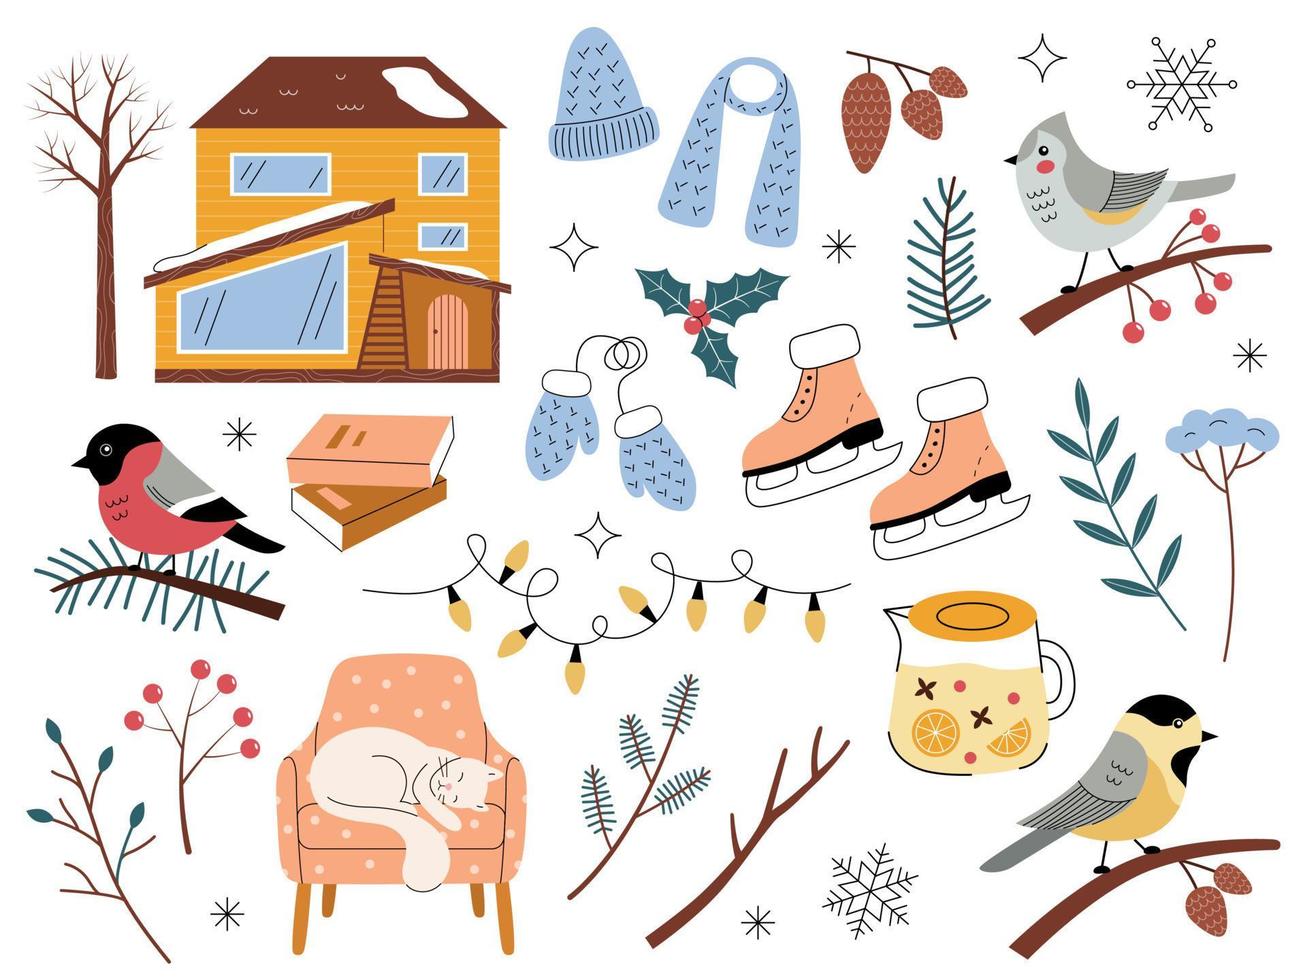 vinter- uppsättning med botanisk element och mysigt objekt. vektor illustration i en trender platt stil med ett översikt. hus, träd, fåglar, grenar, gran kottar, kläder. romantisk samling